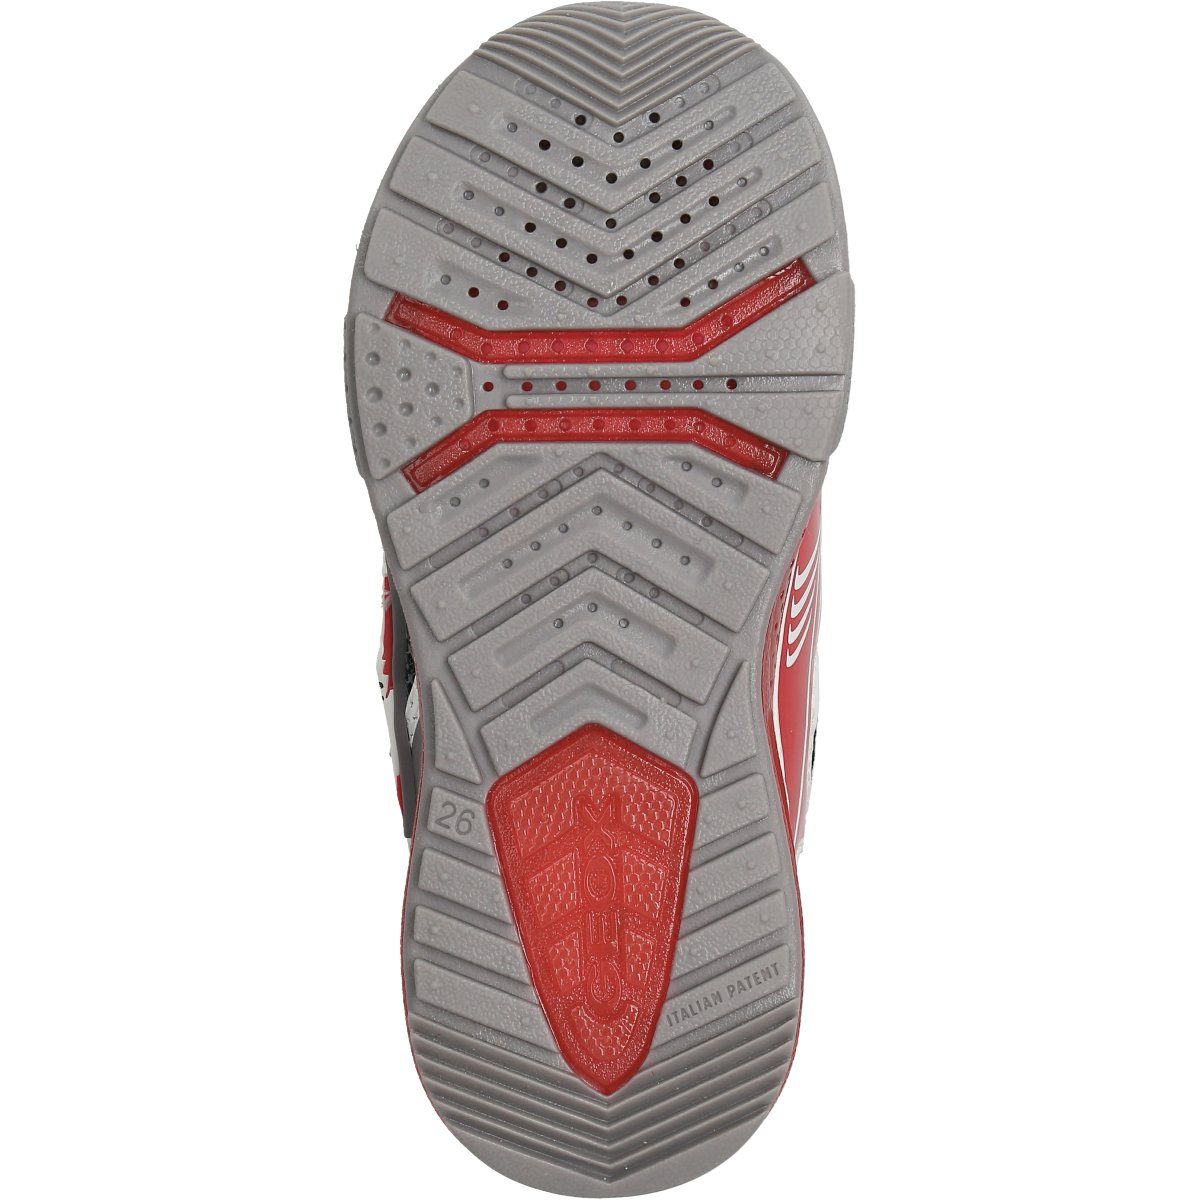 BAYONYC Sneaker (grey/red) Grau Geox